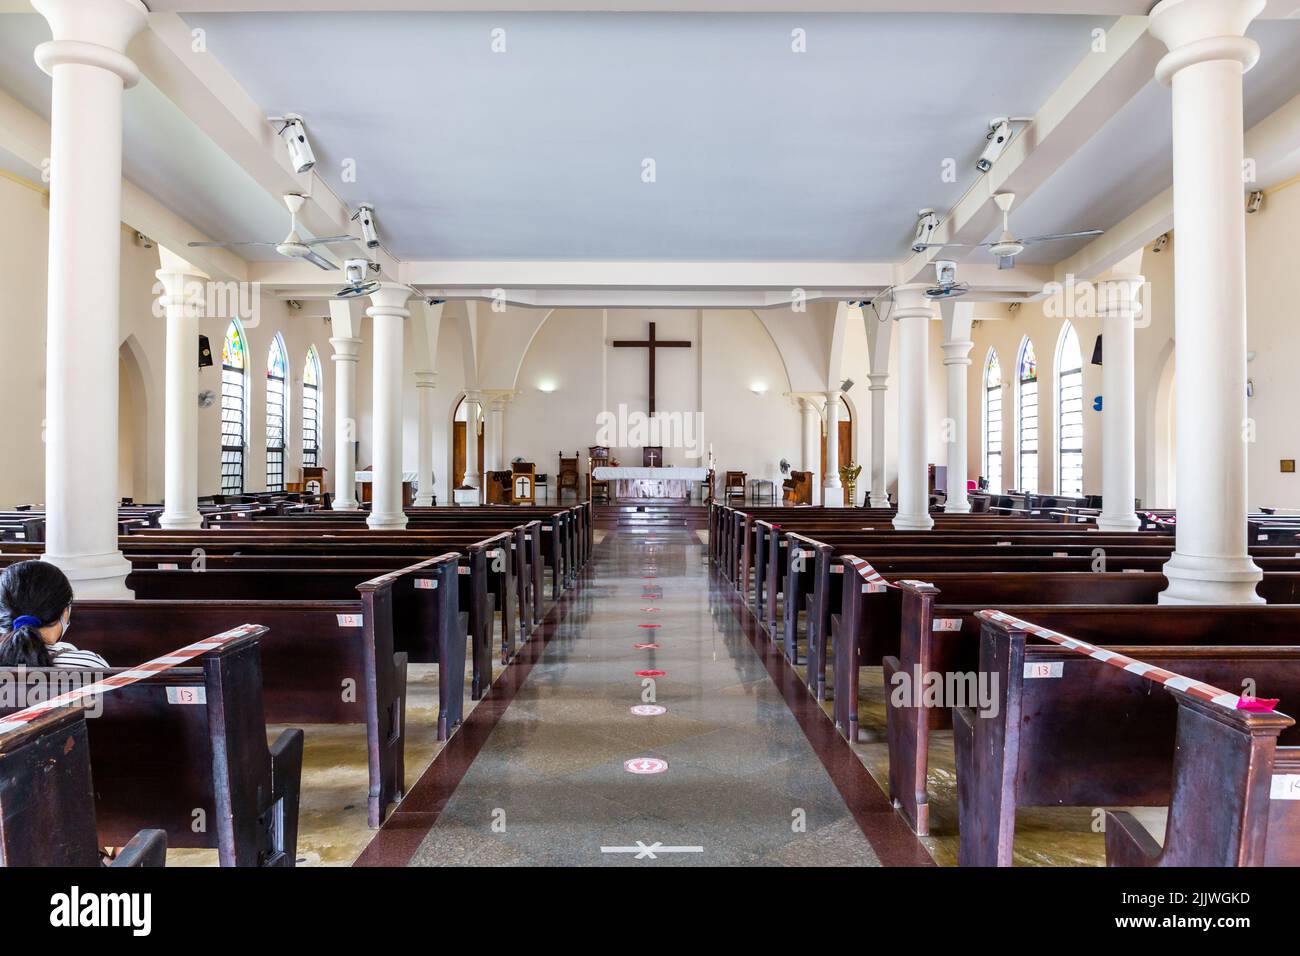 Victoria, Seychellen, 04.05.21. Hauptschiff und Altar der St. Paul's Anglican Cathedral, Victoria, Seychellen, Innenansicht der Kirche. Stockfoto